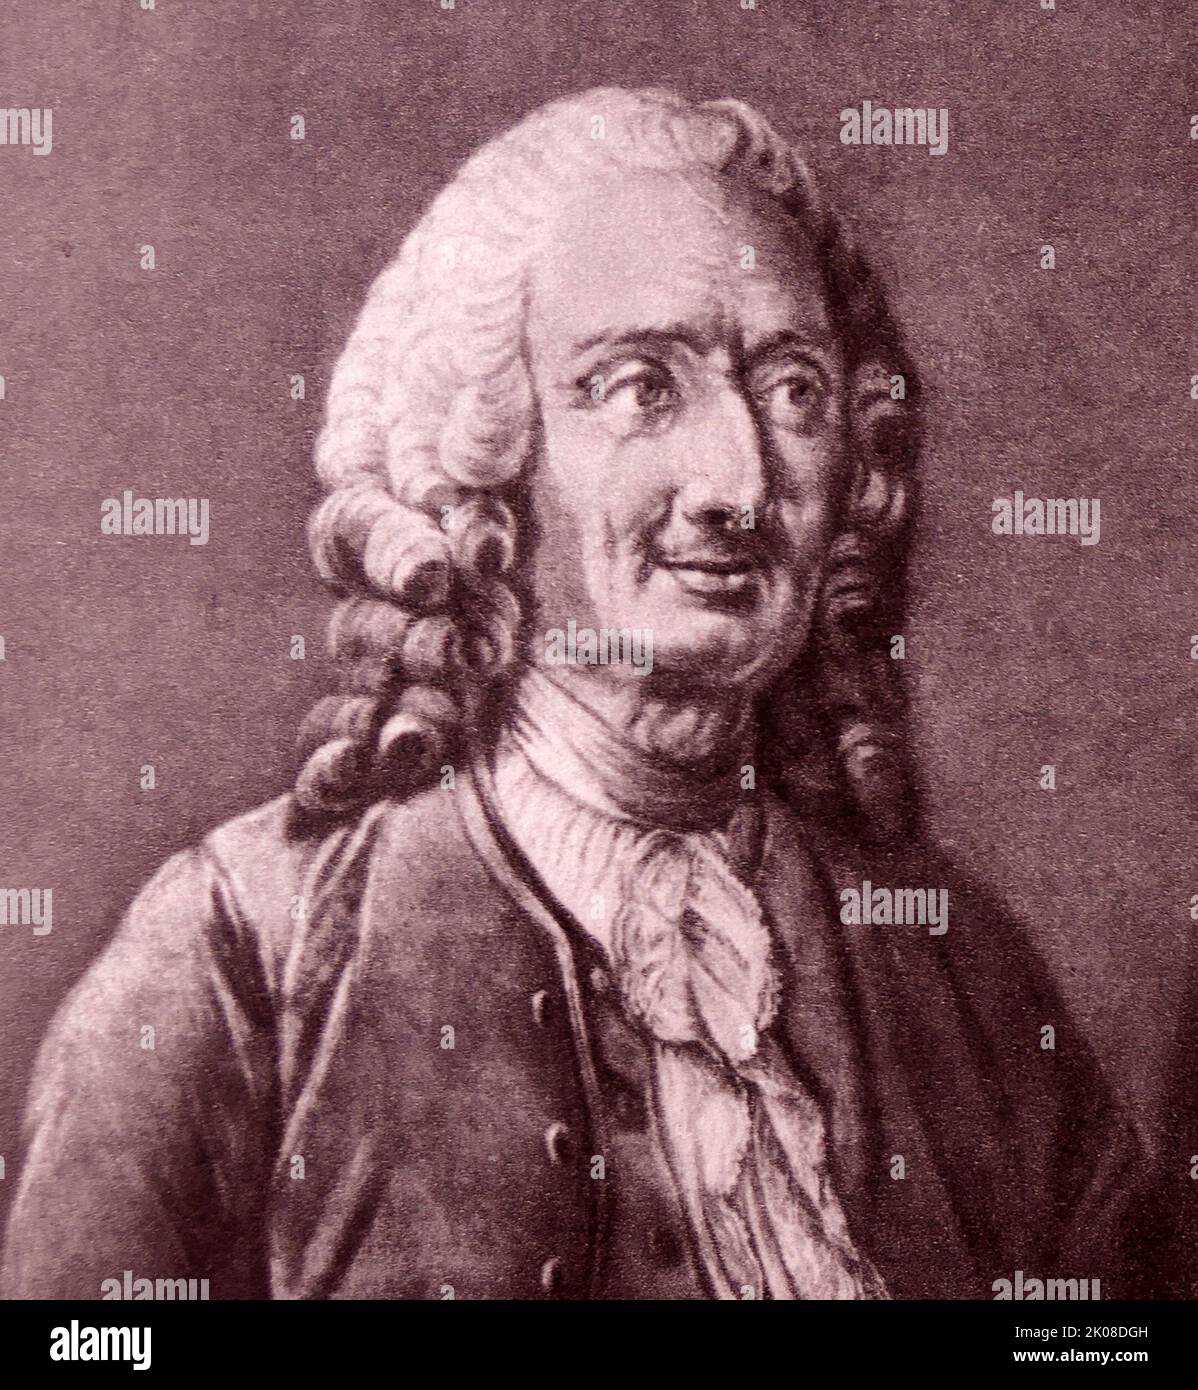 Jean-Philippe Rameau (Parigi, 25 settembre 1683 – Parigi, 12 settembre 1764) è stato un . Considerato come uno dei più importanti compositori e teorici musicali francesi del 18th ° secolo Foto Stock